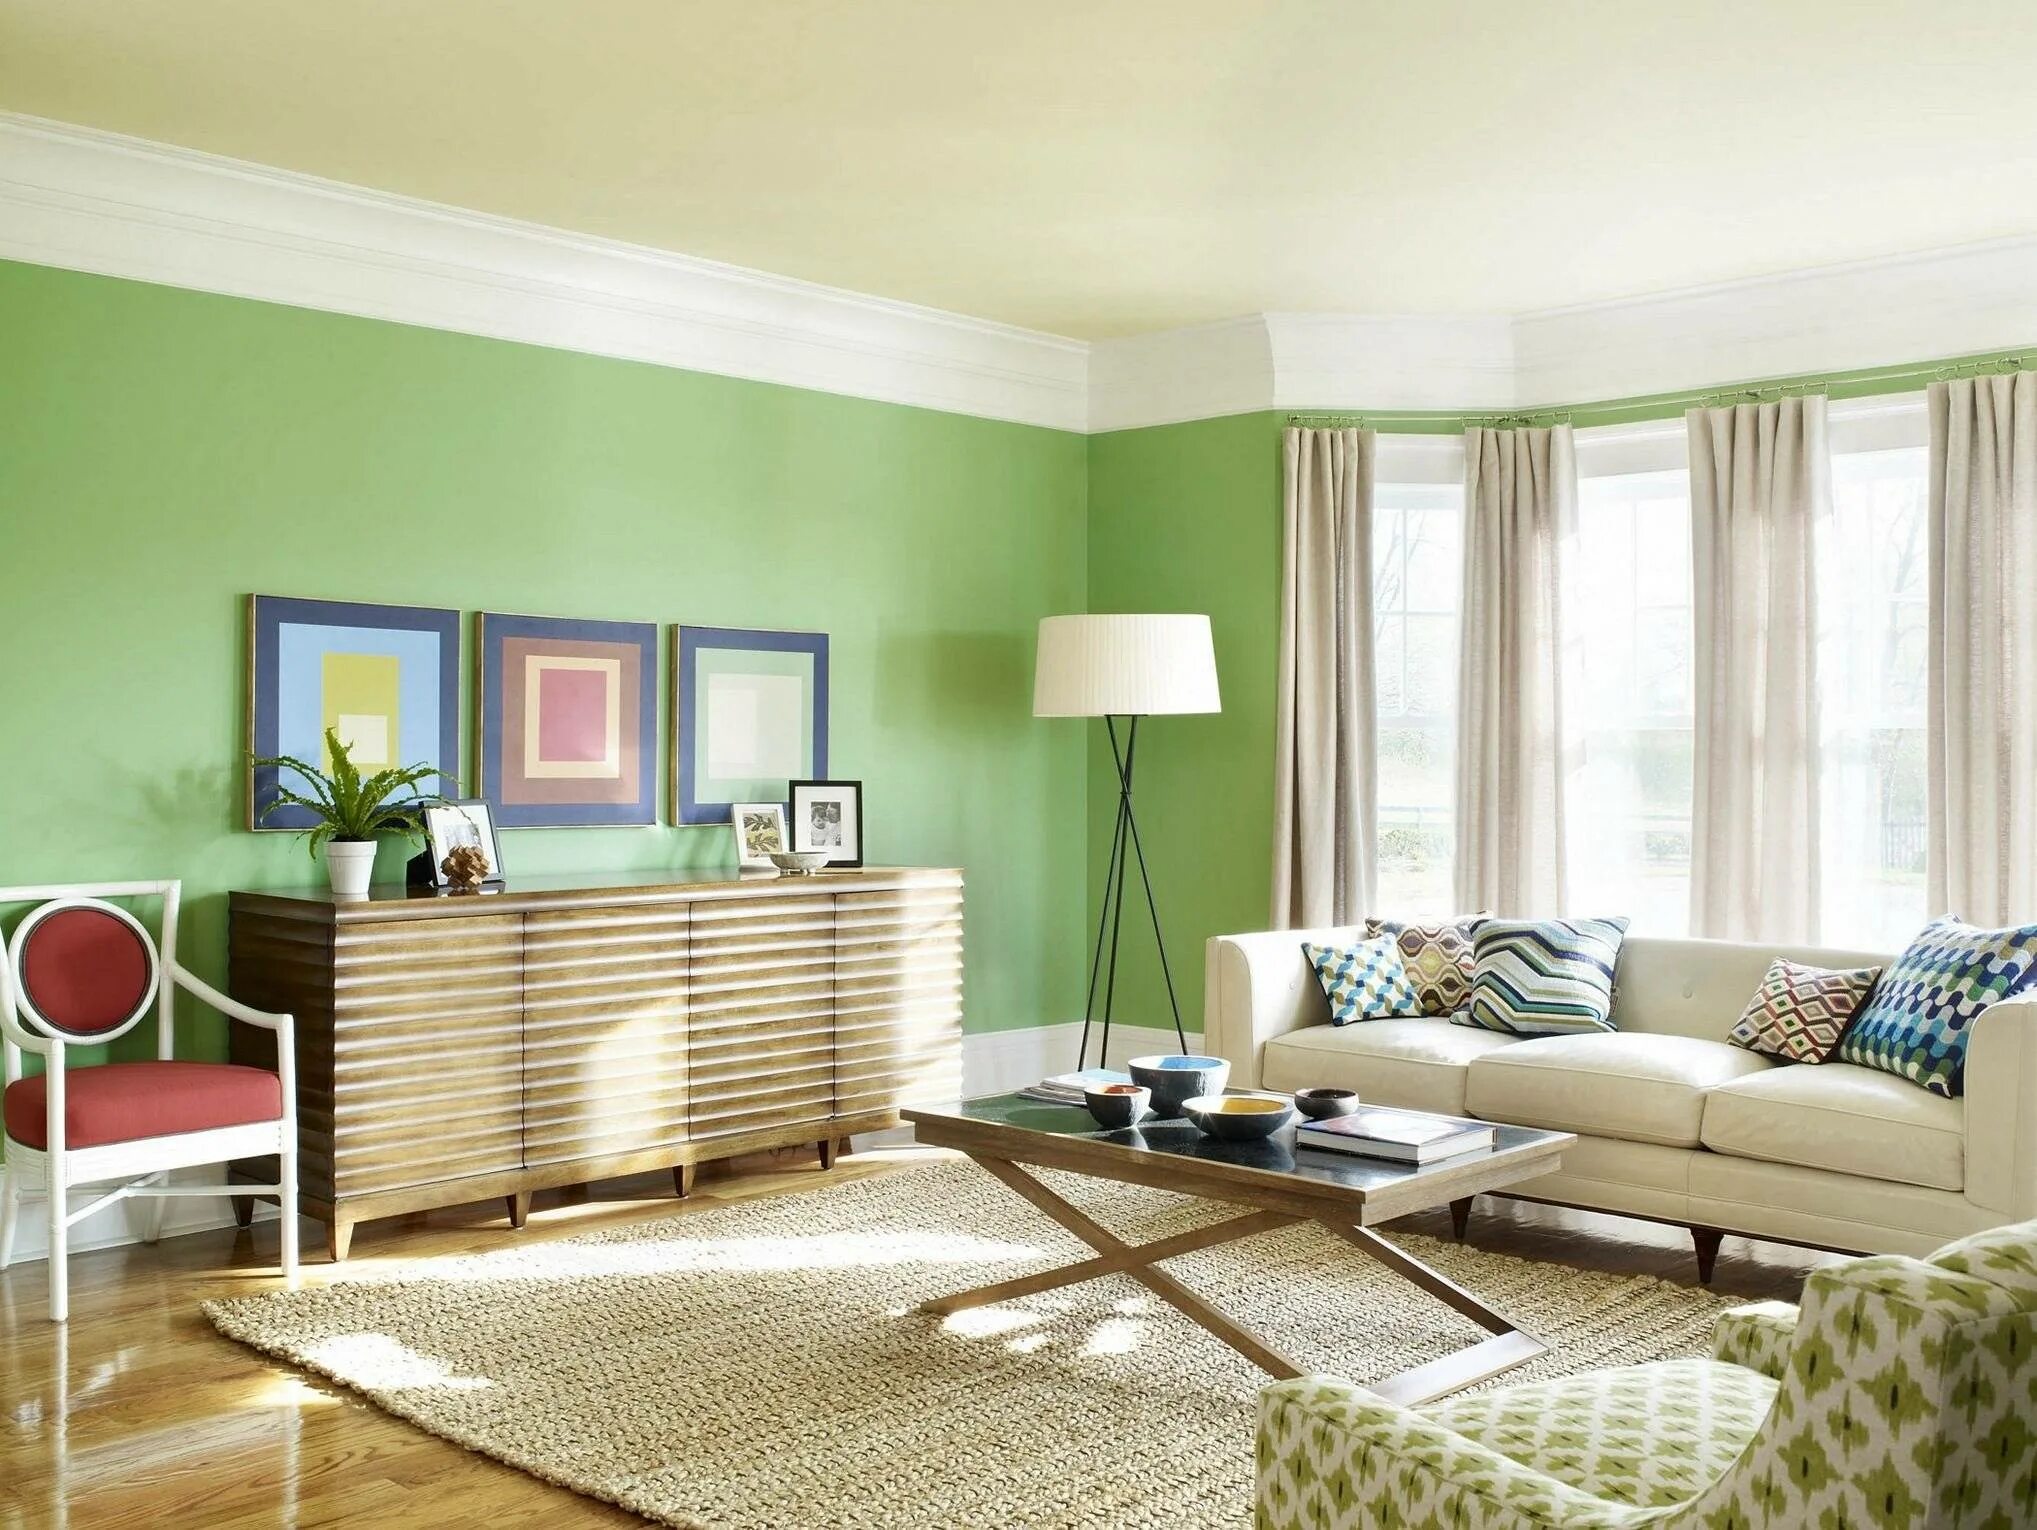 Популярные цвета стен. Зеленый цвет в интерьере. Бледно-зеленый цвет в интерьере. Покрашенные стены в интерьере. Салатный цвет в интерьере.